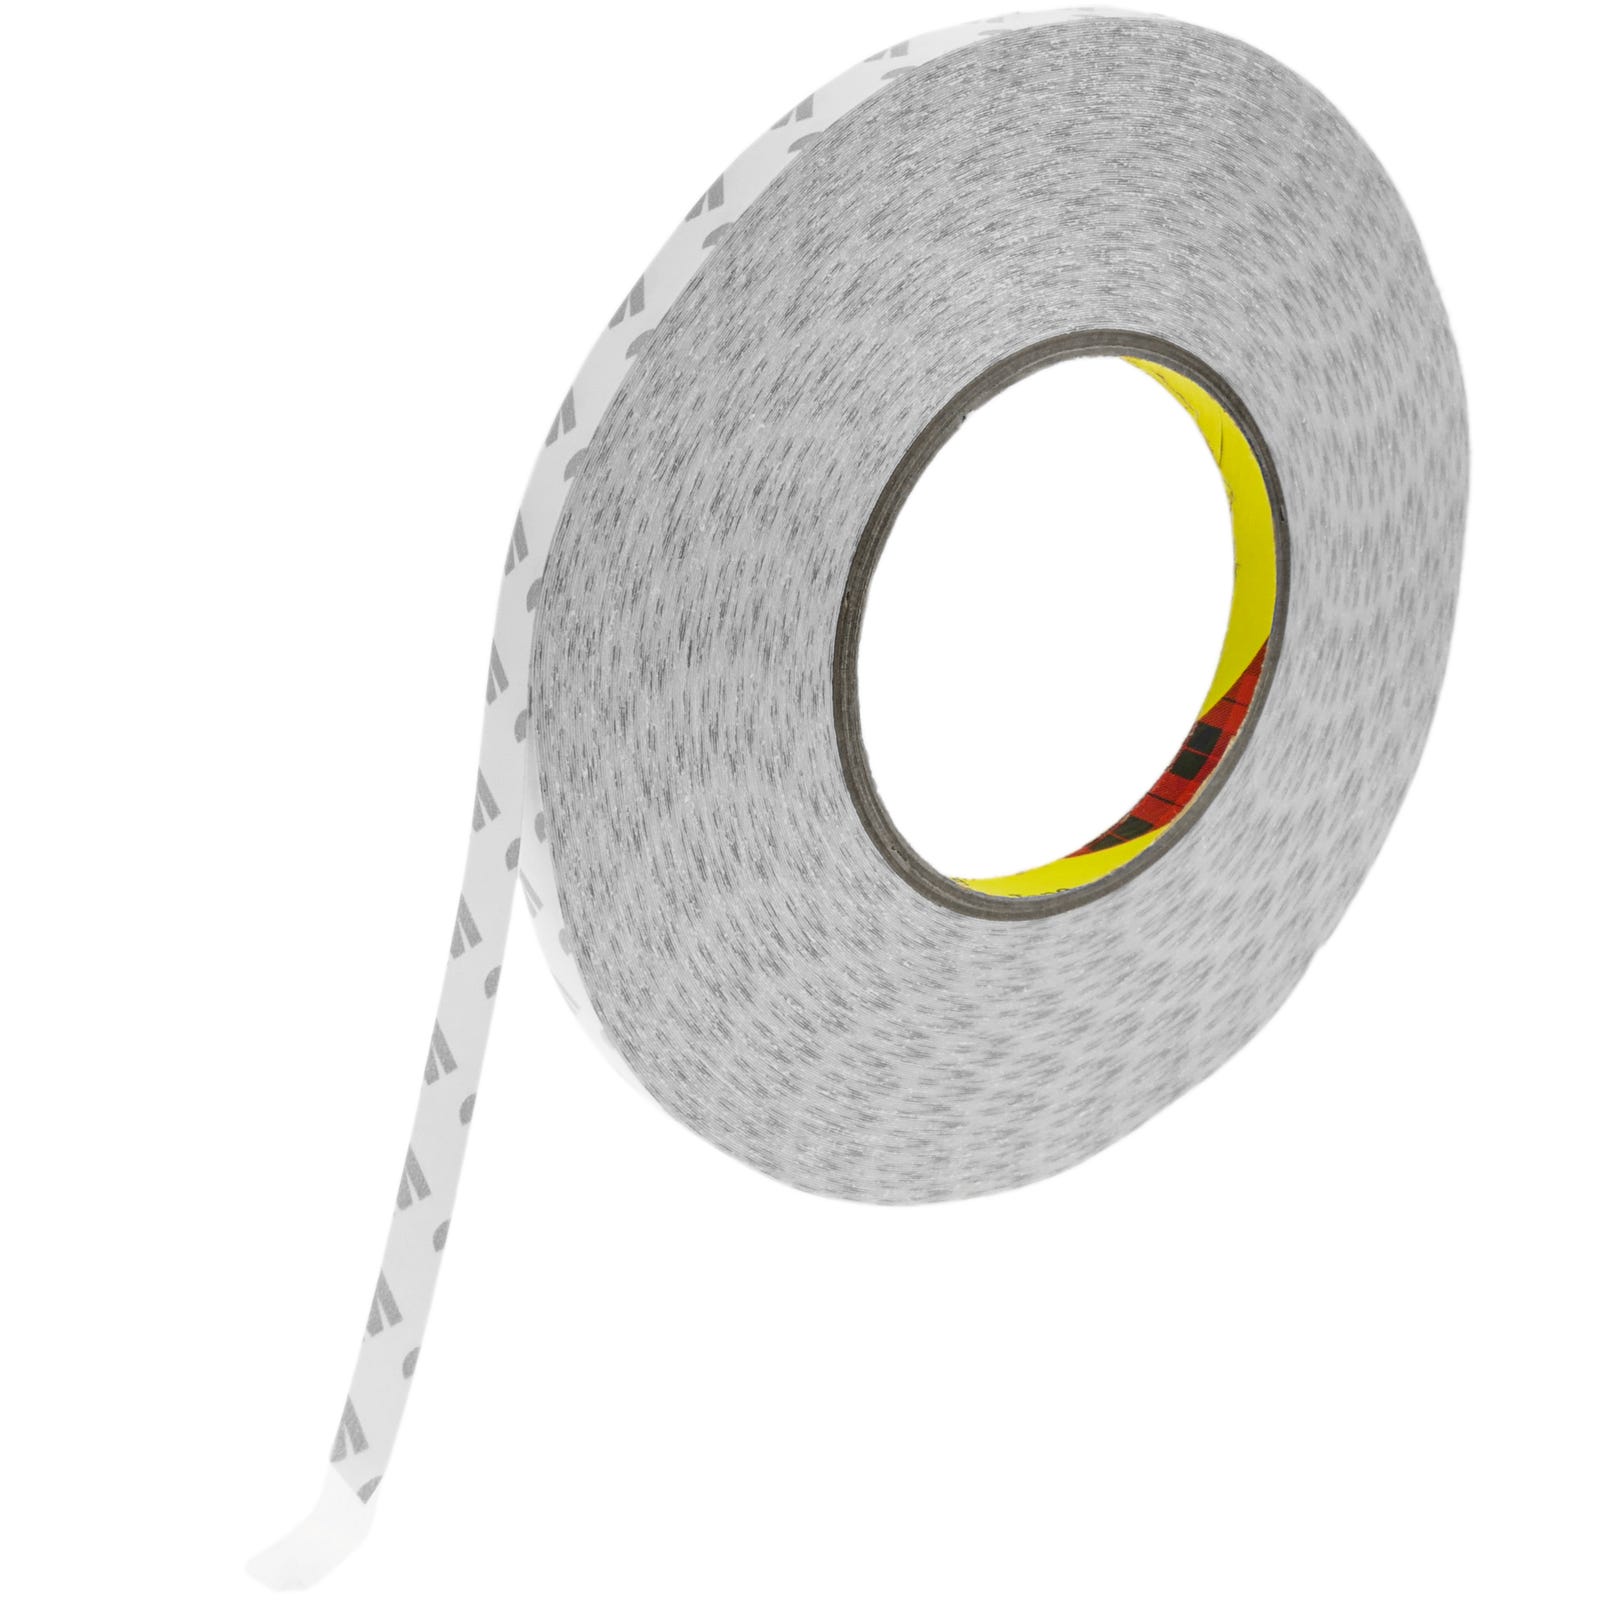 Venta online de cinta adhesiva de doble cara de 50ml x 30mm.